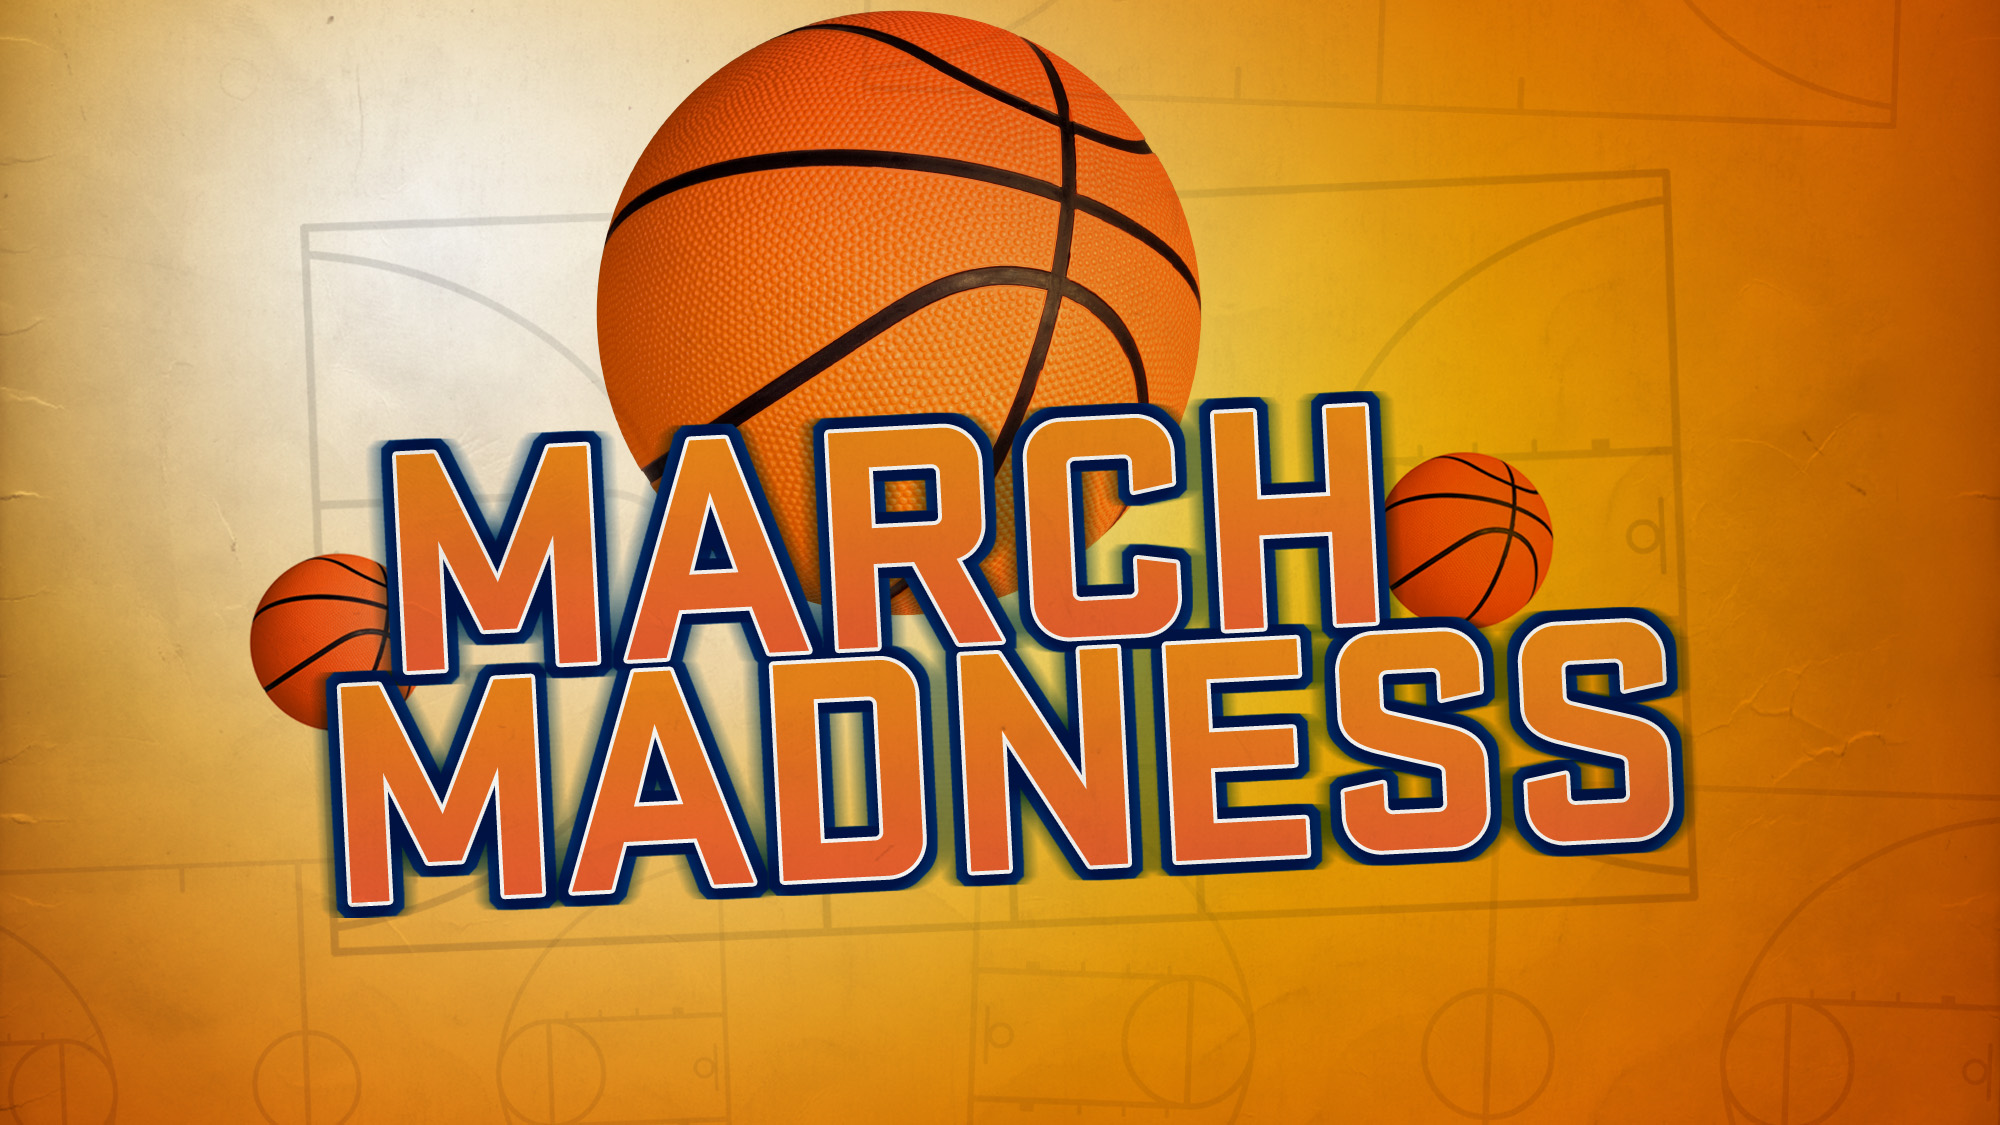 March Madness March Madness 2015 Ncaa Basketball Z2Zpa2yUmZqaraWkpJRnZWVlrWZmZ2o 